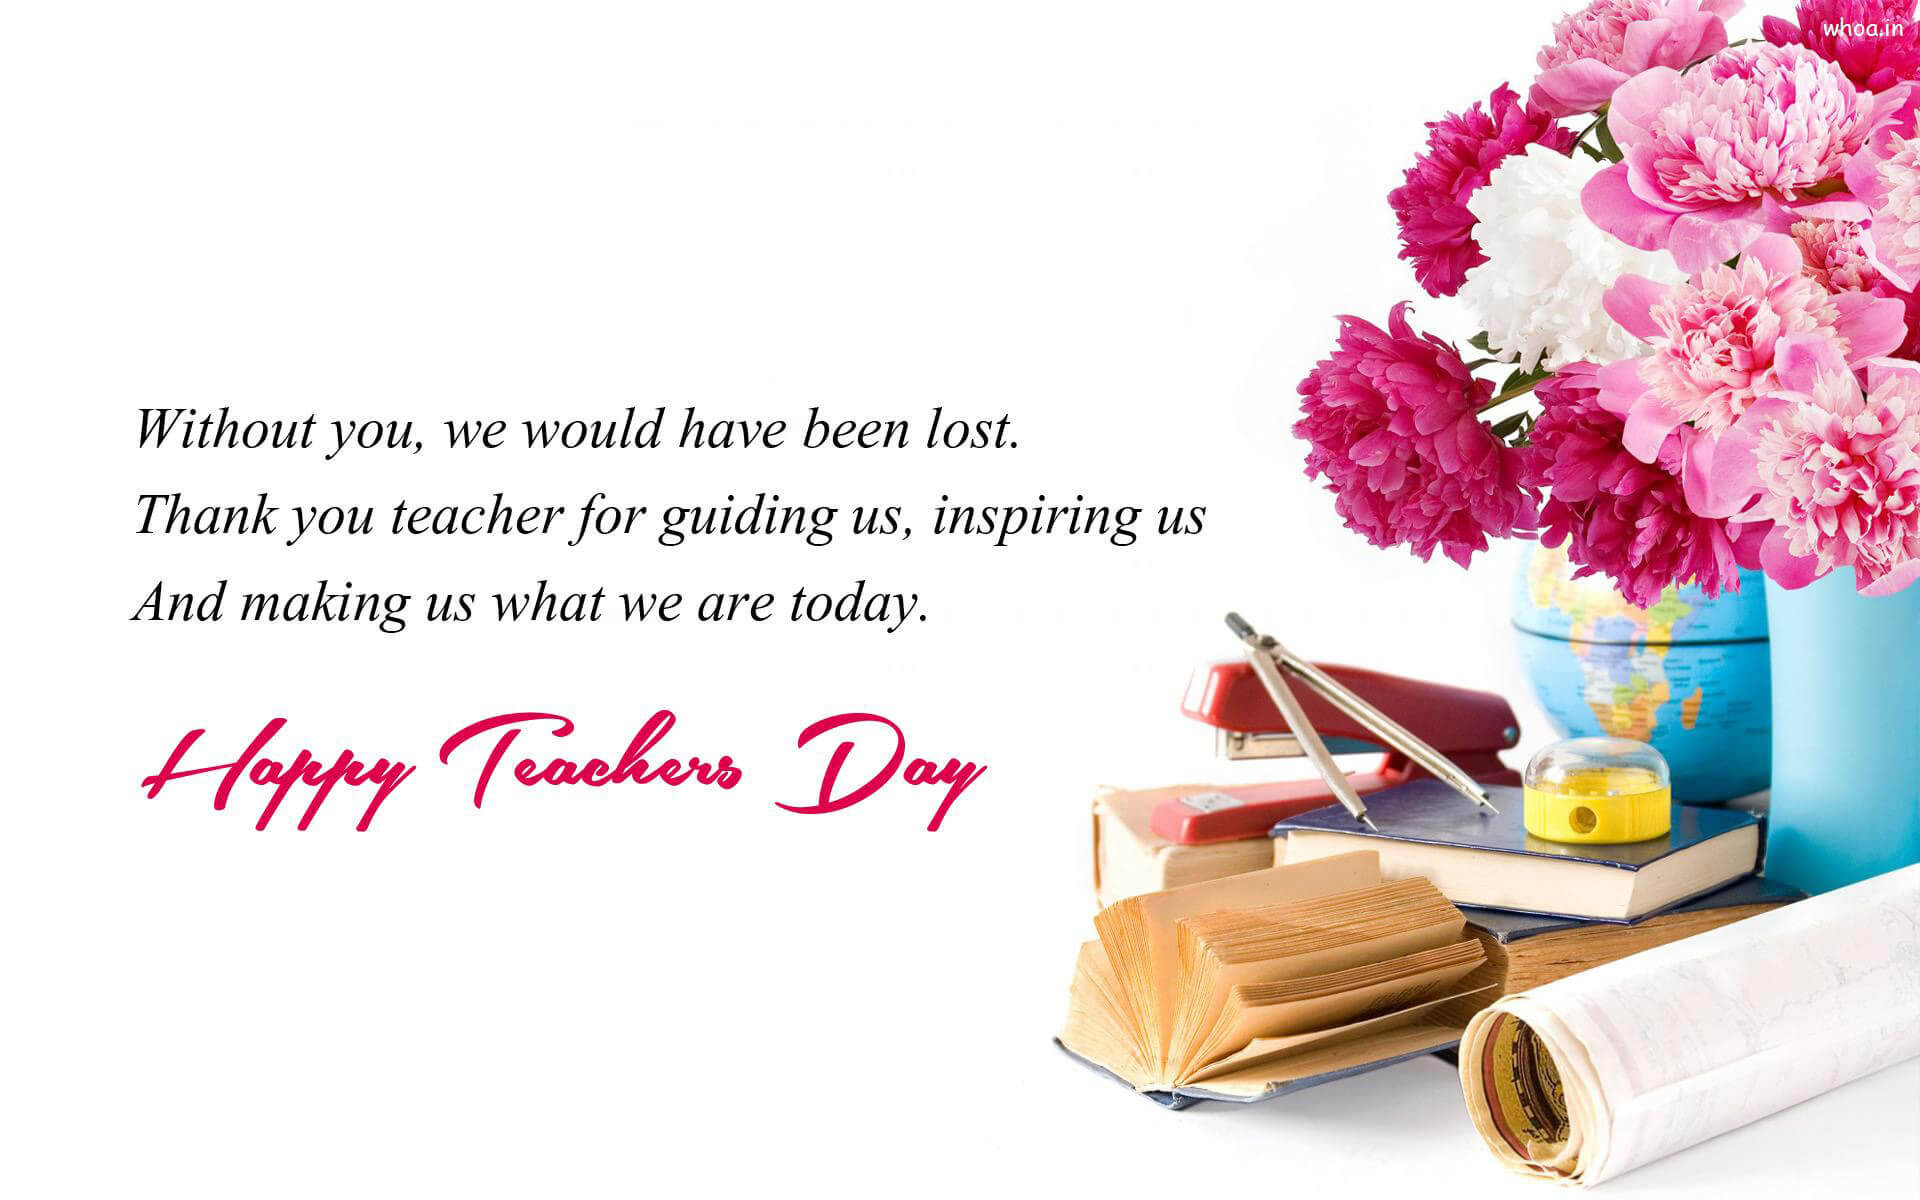 Happy Teachers' Day Quote